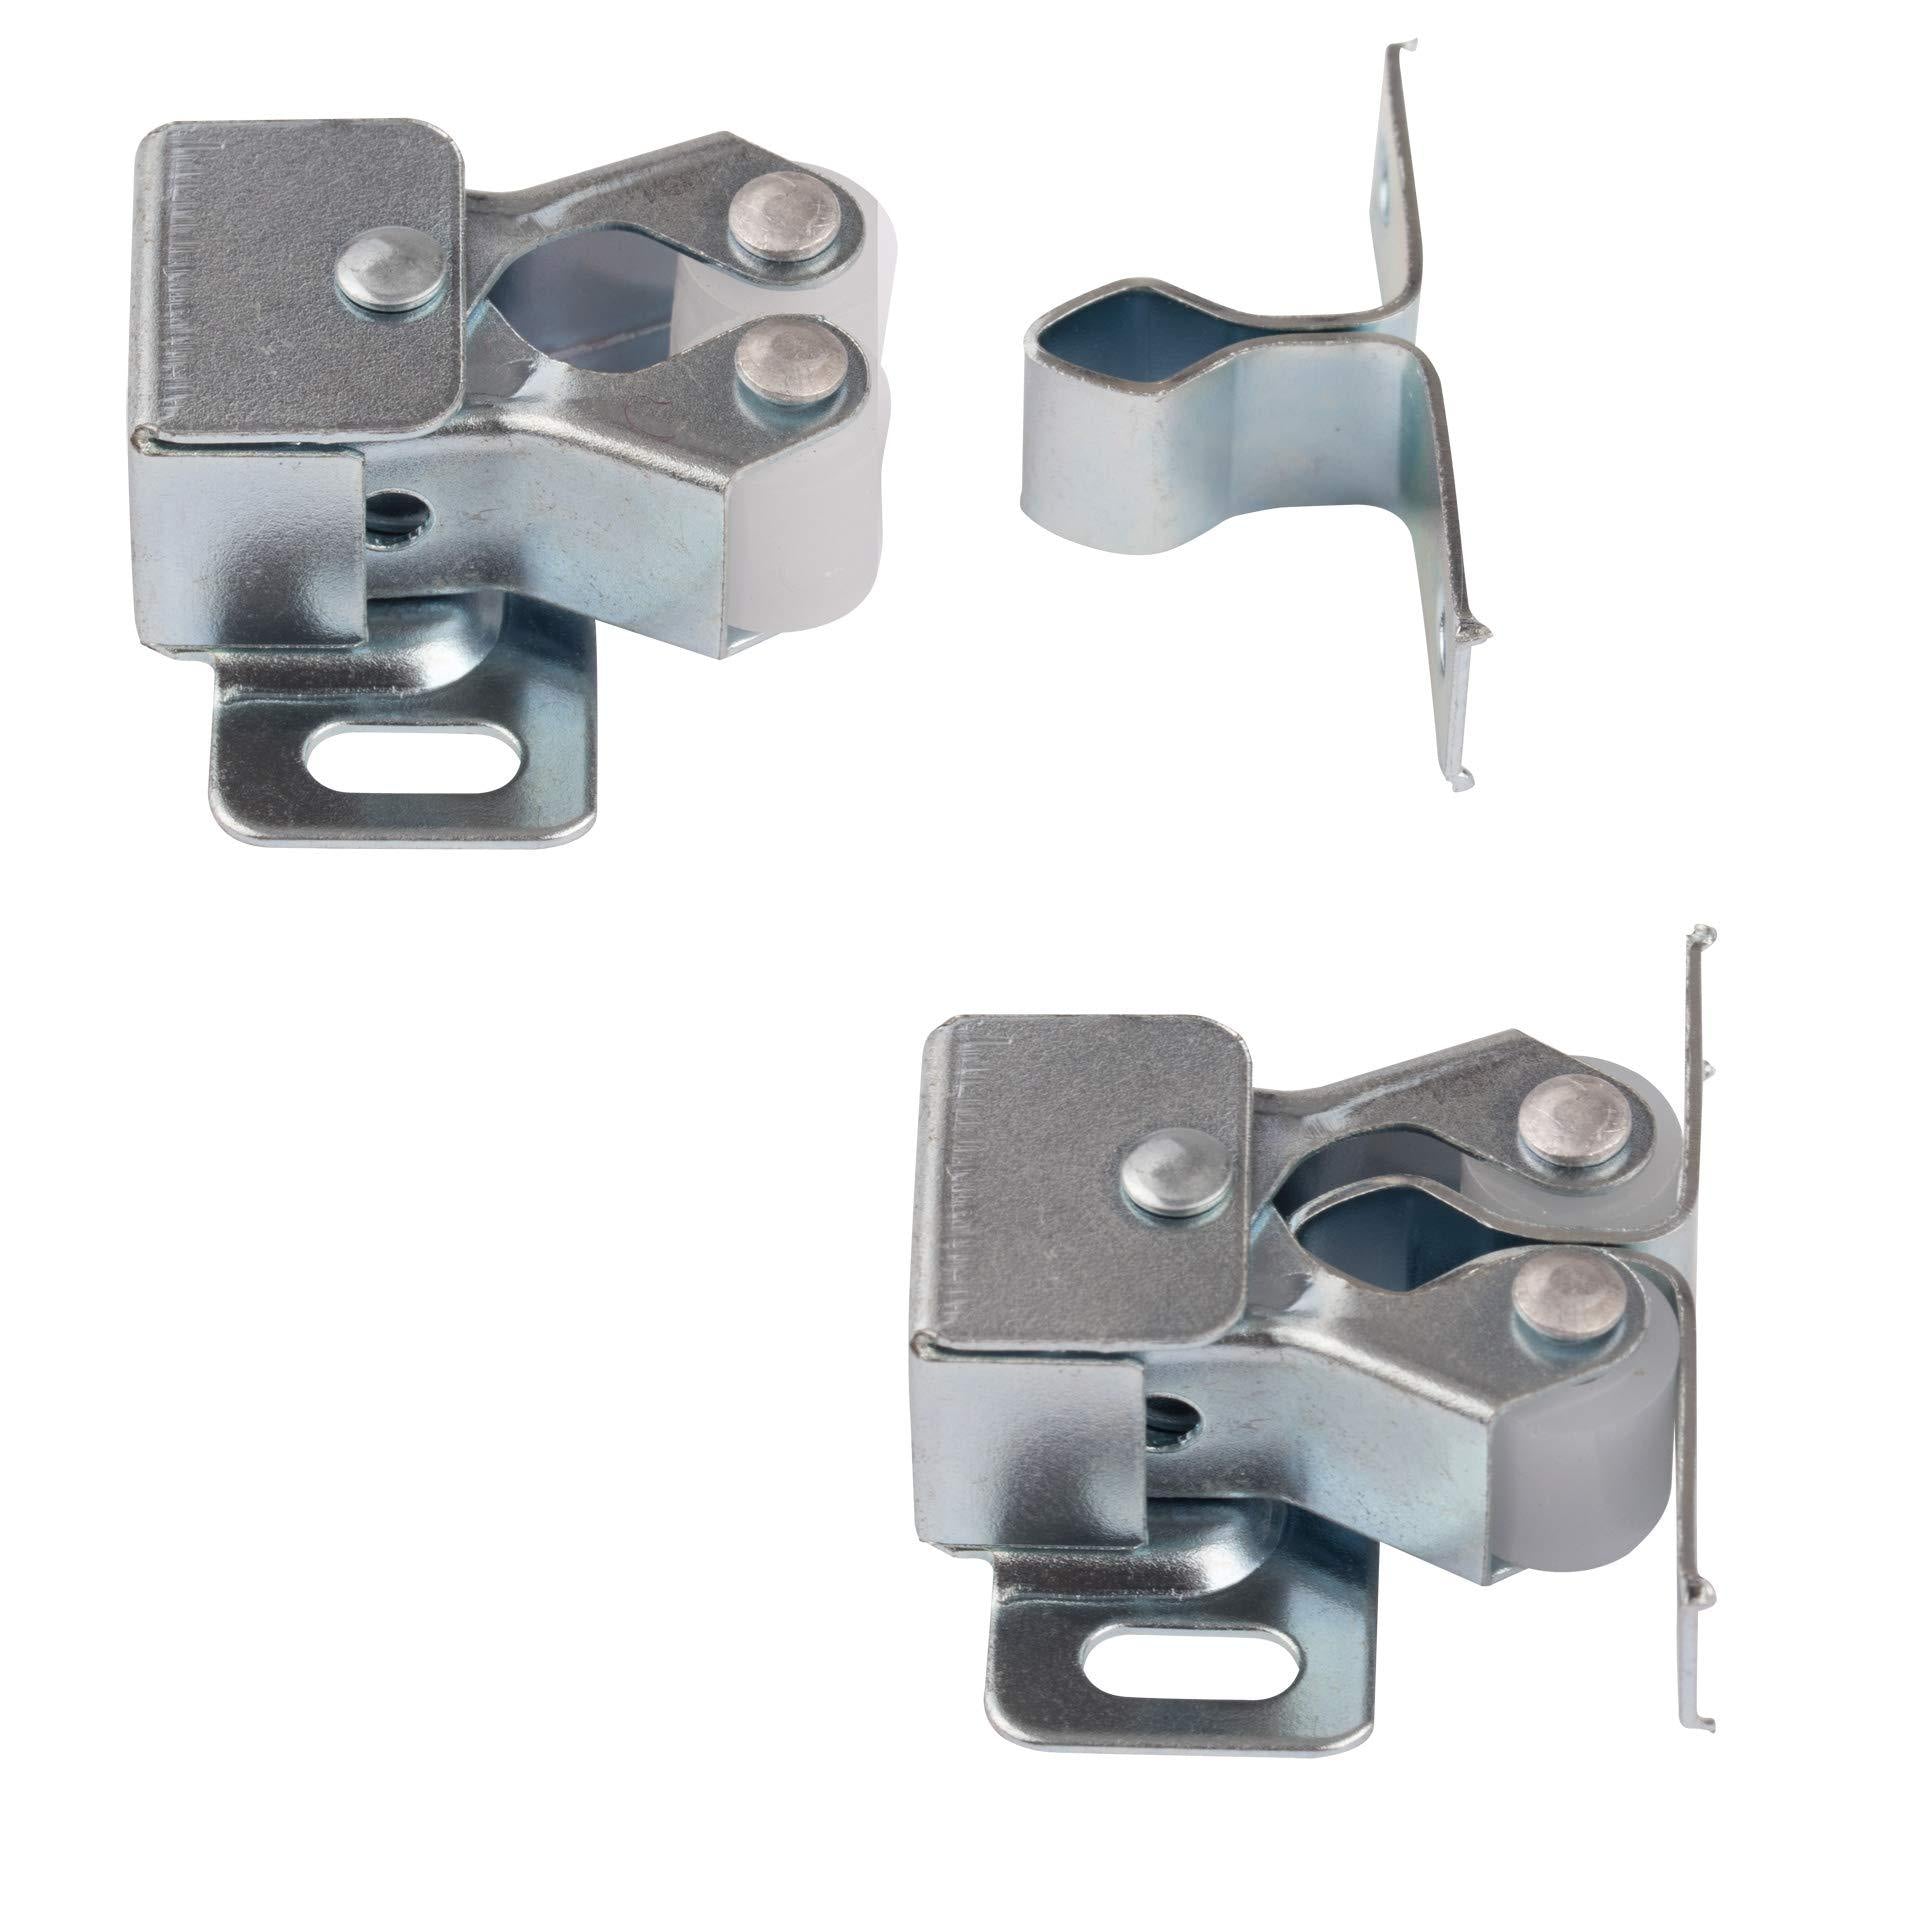 LouMaxx Möbelschnapper 5er Set – Schnappschloss - Tür Verschluss - Möbelschnäpper - Rollenschnäpper - Stabiler Türverschluss oder Möbelverschluss